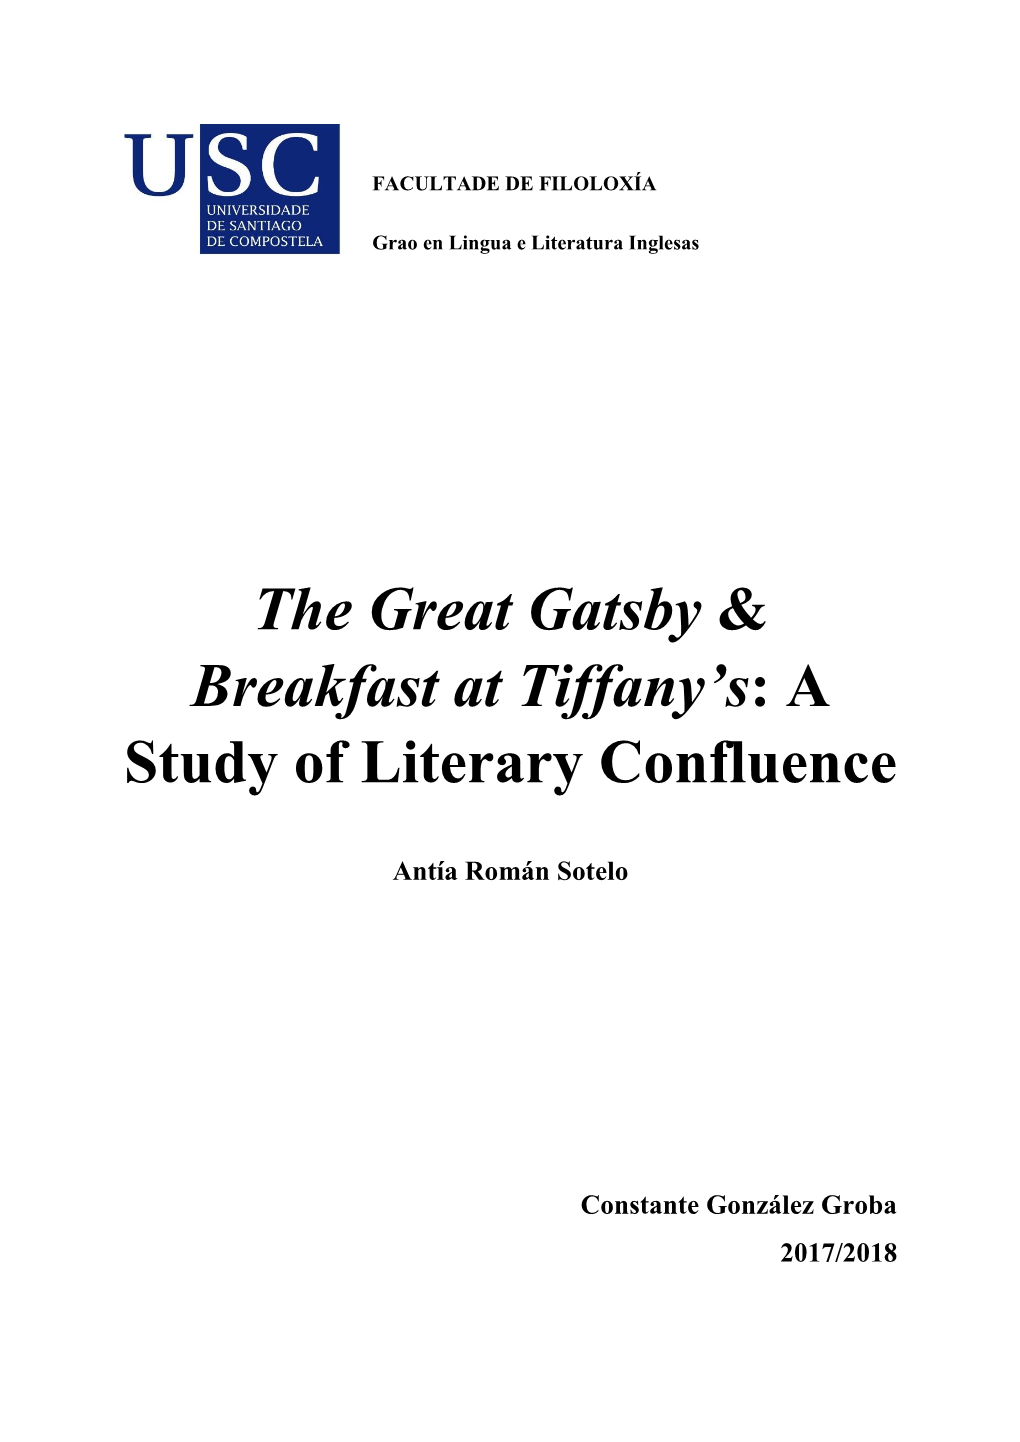 The Great Gatsby & Breakfast at Tiffany's